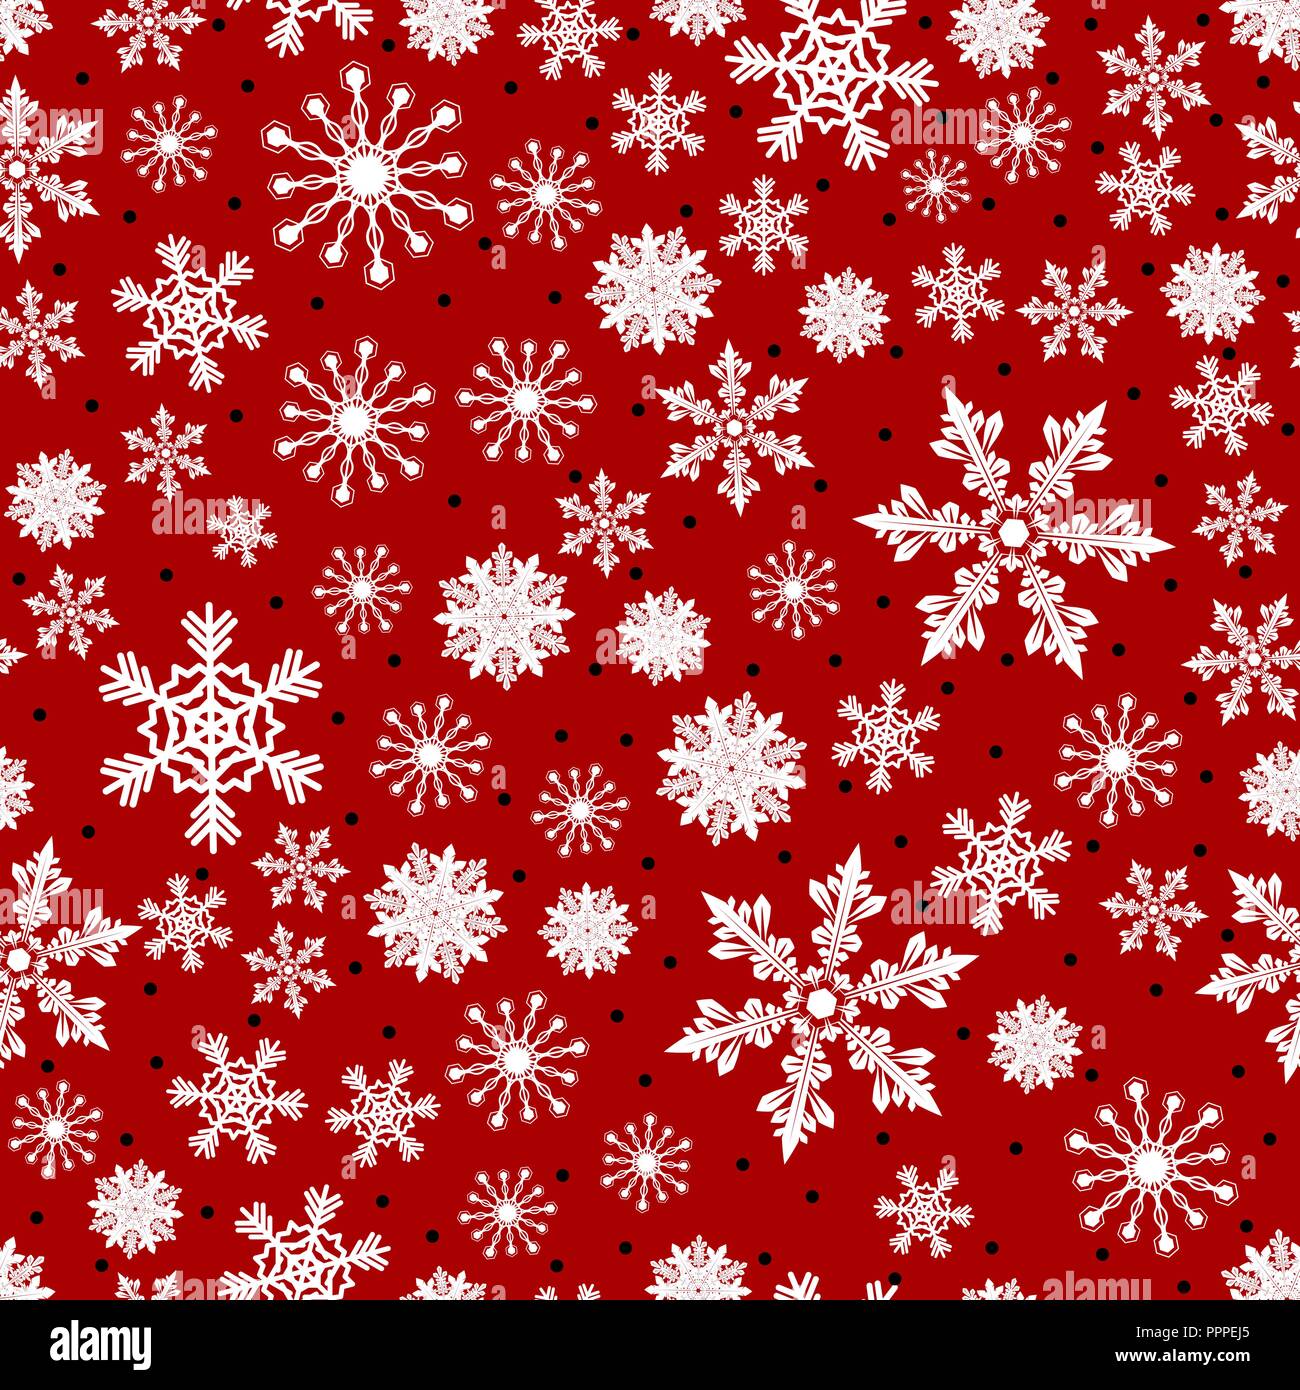 Free Stock Photo of Snow Flakes Background Shows Seasonal